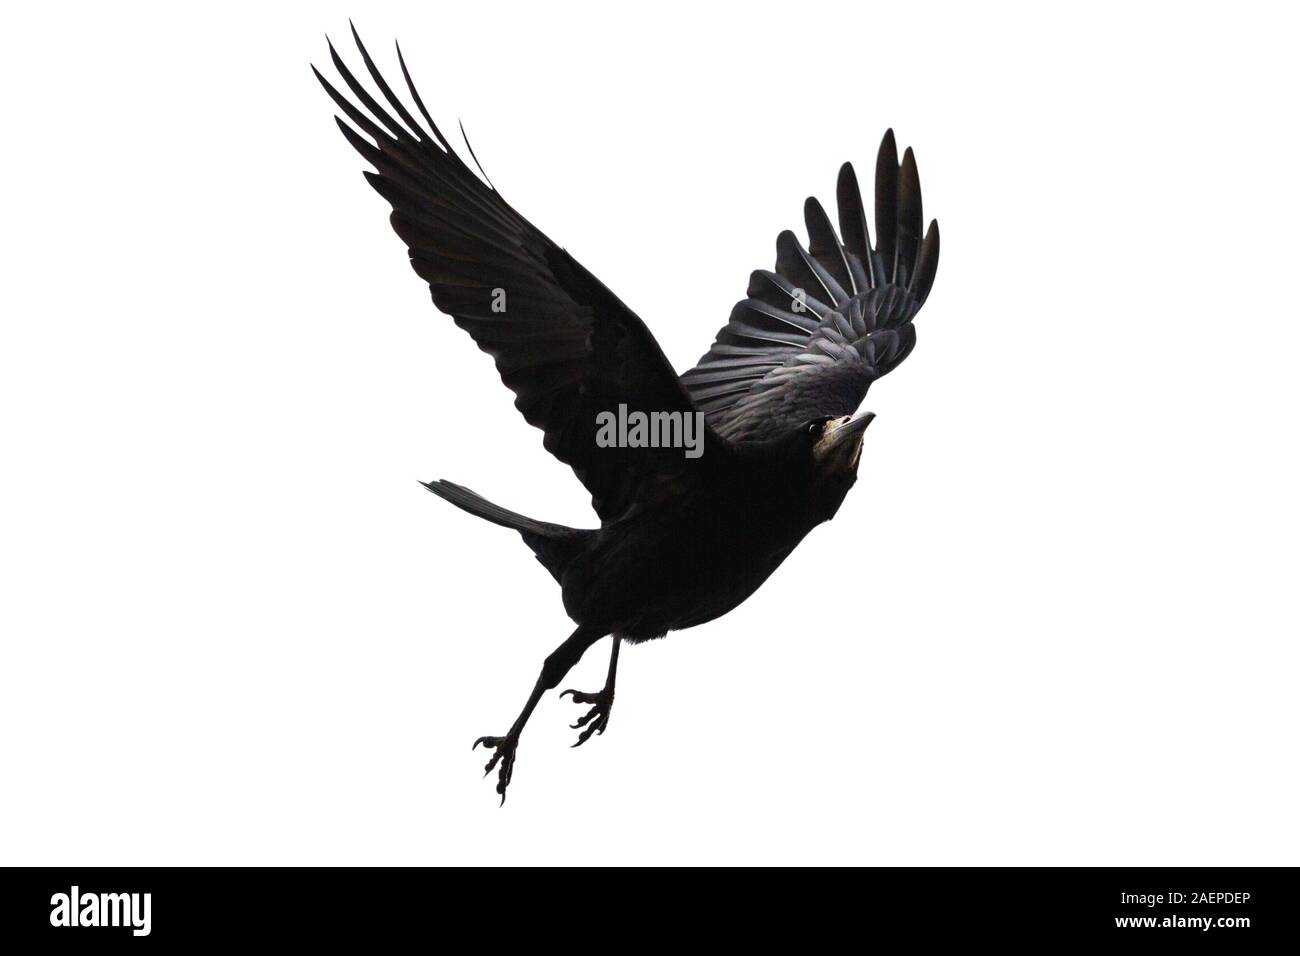 black bird flies on a white background Stock Photo